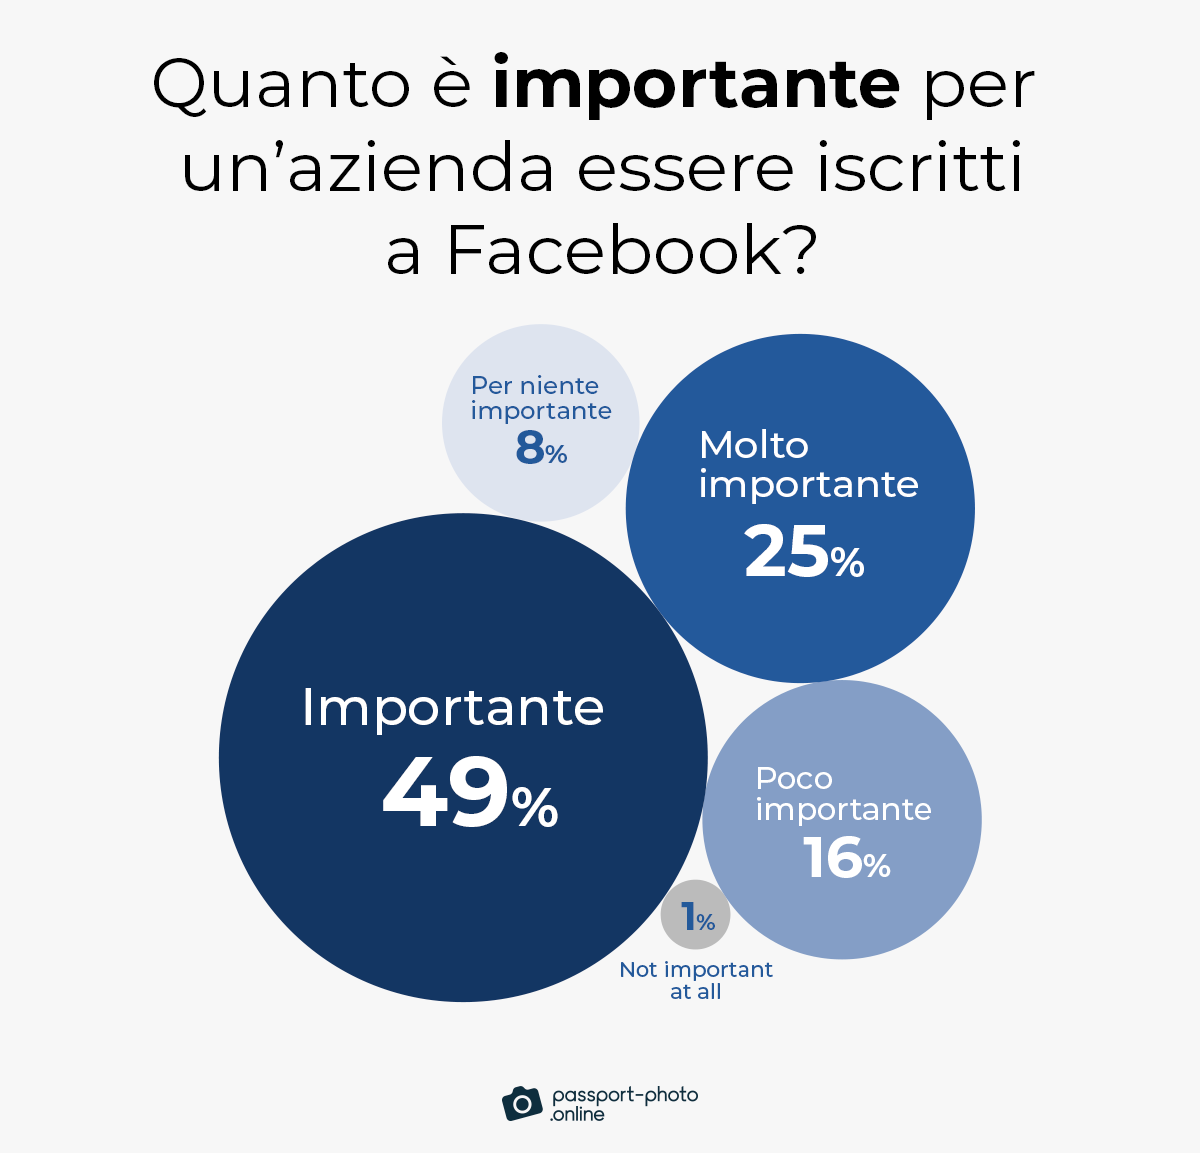 il 74% degli utenti crede che sia importante o molto importante per un’impresa essere registrati su Facebook